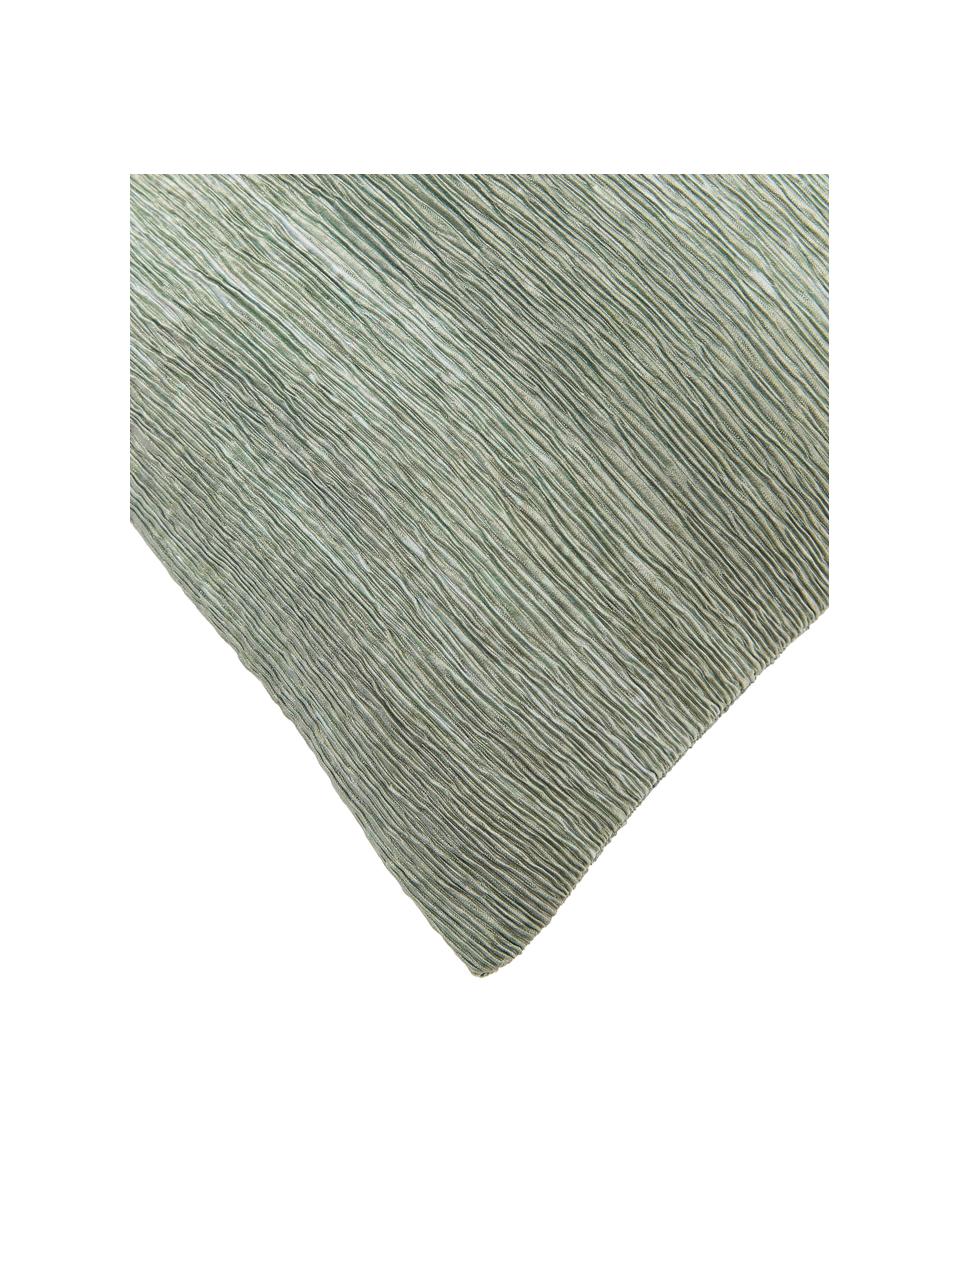 Housse de coussin texturée Aline, 100 % polyester, Vert, larg. 45 x long. 45 cm